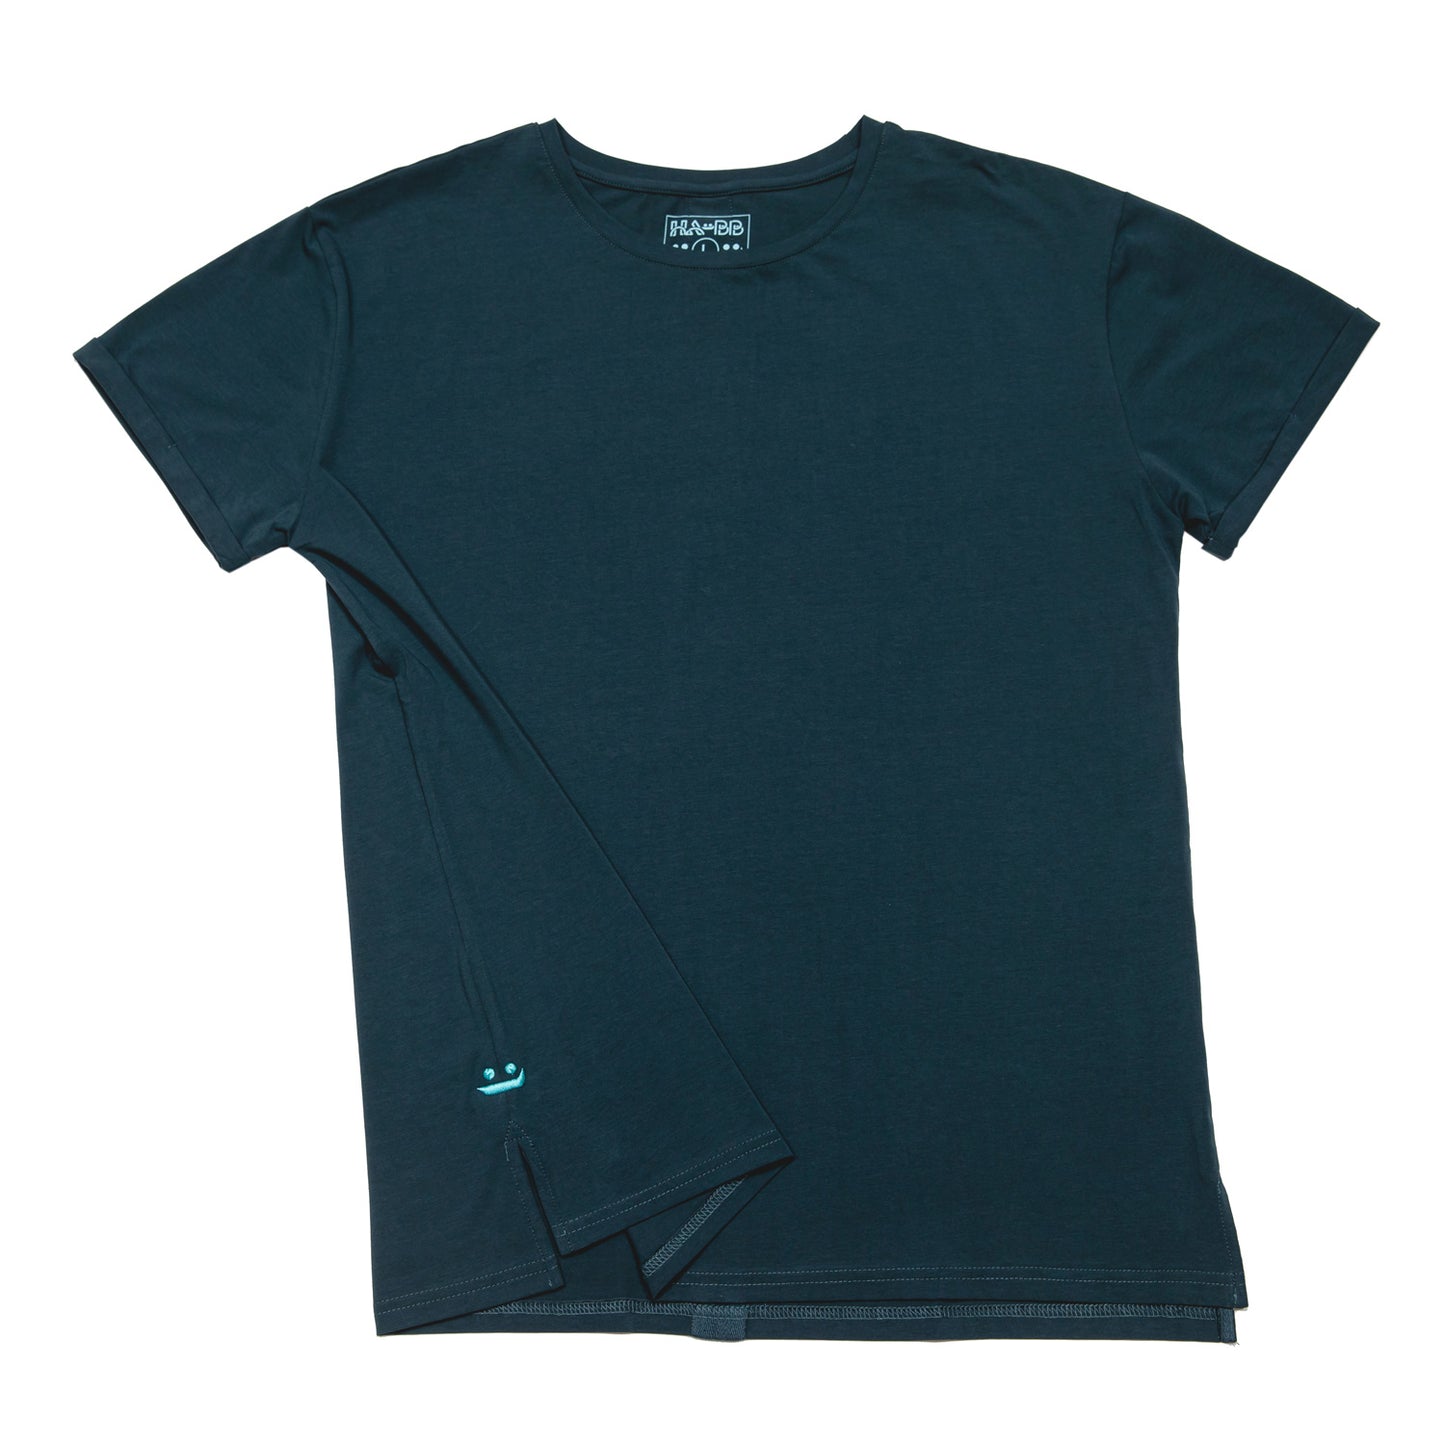 Blue Aegean, T-shirt, shirt, man, plane tee, soft cotton, sleek, front view, 